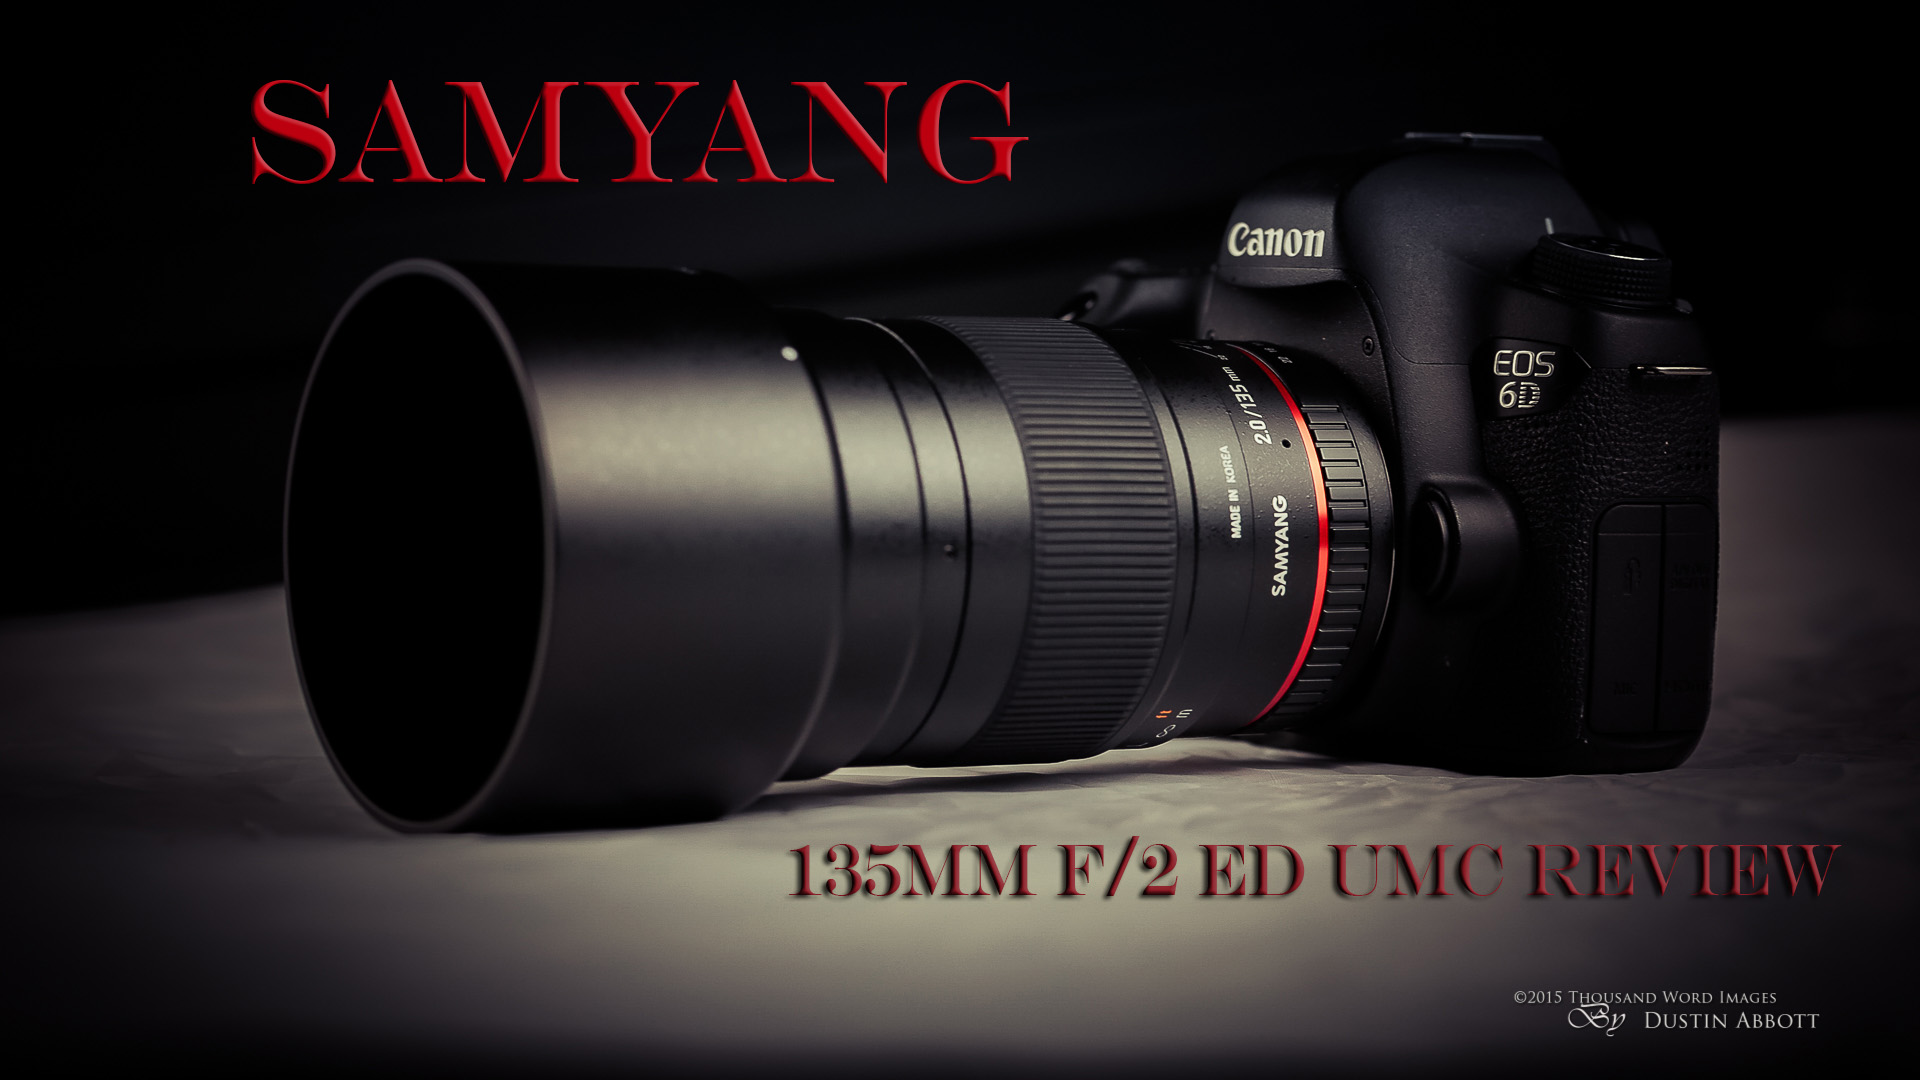 Samyang 135mm f/2 ED UMC Telephoto Lens Full Review